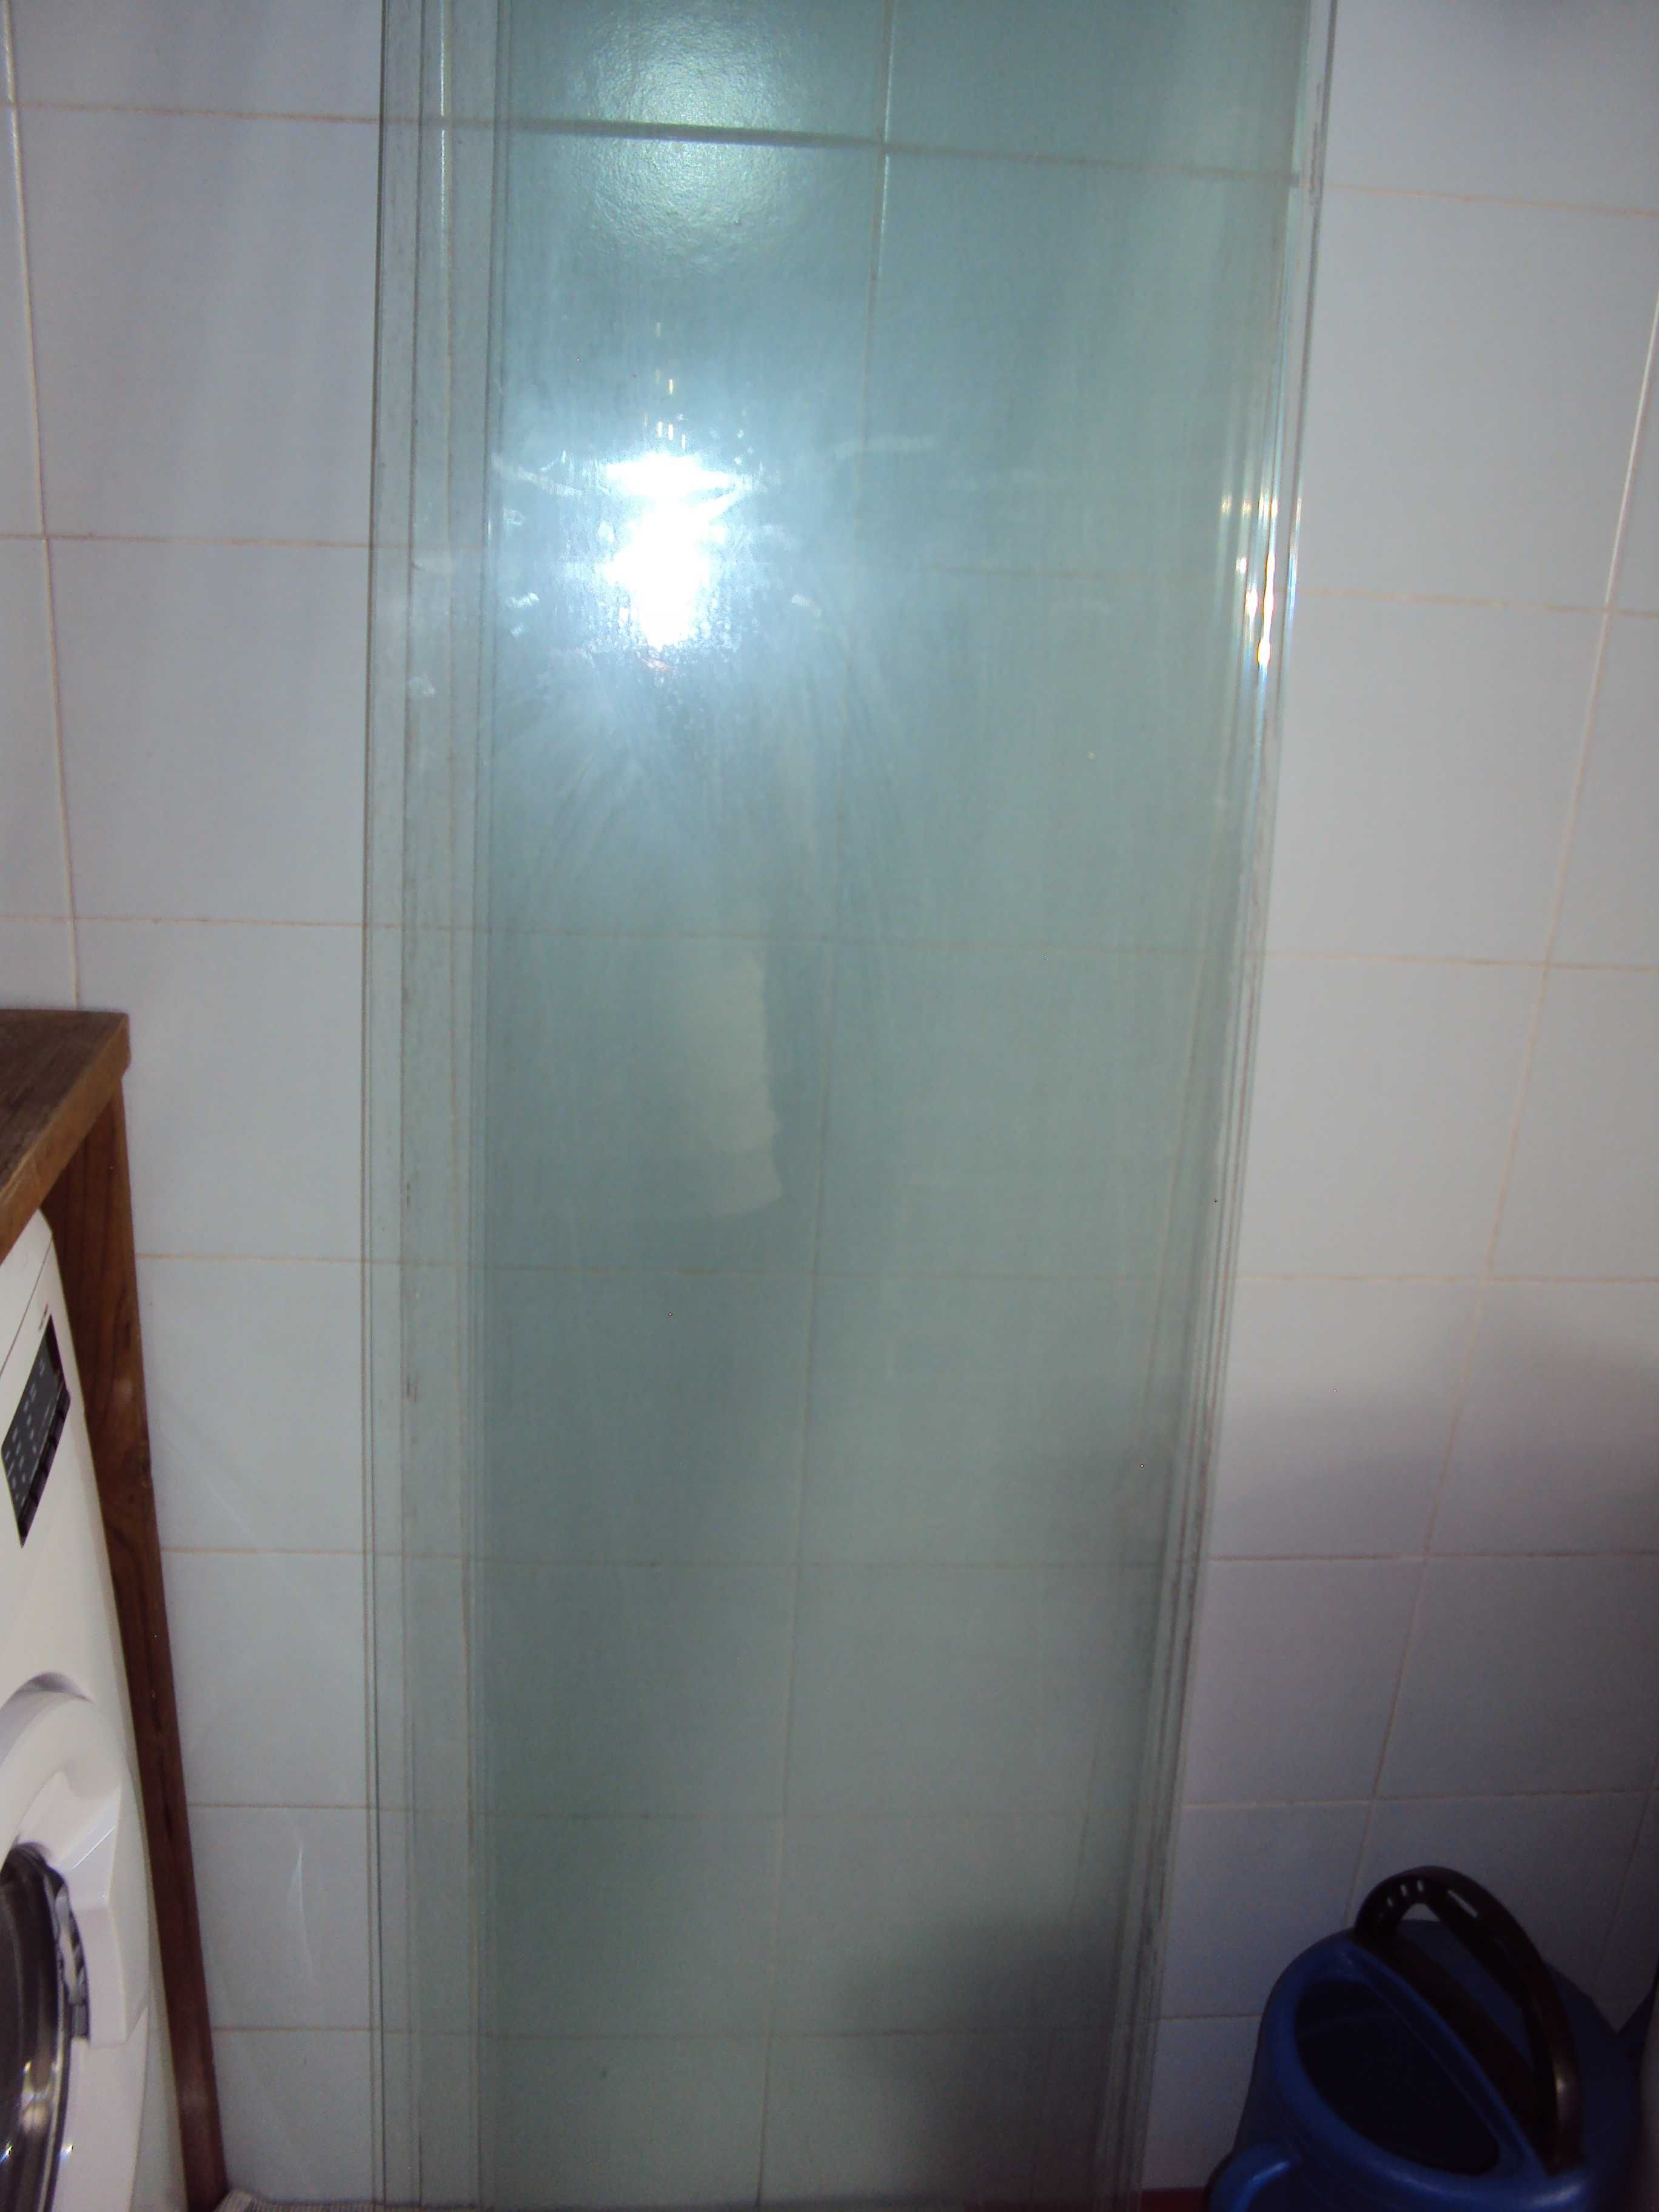 2 vidros com aresta  dimensão 1 metro X 0,30cm X 0,08mm
Preço 12€